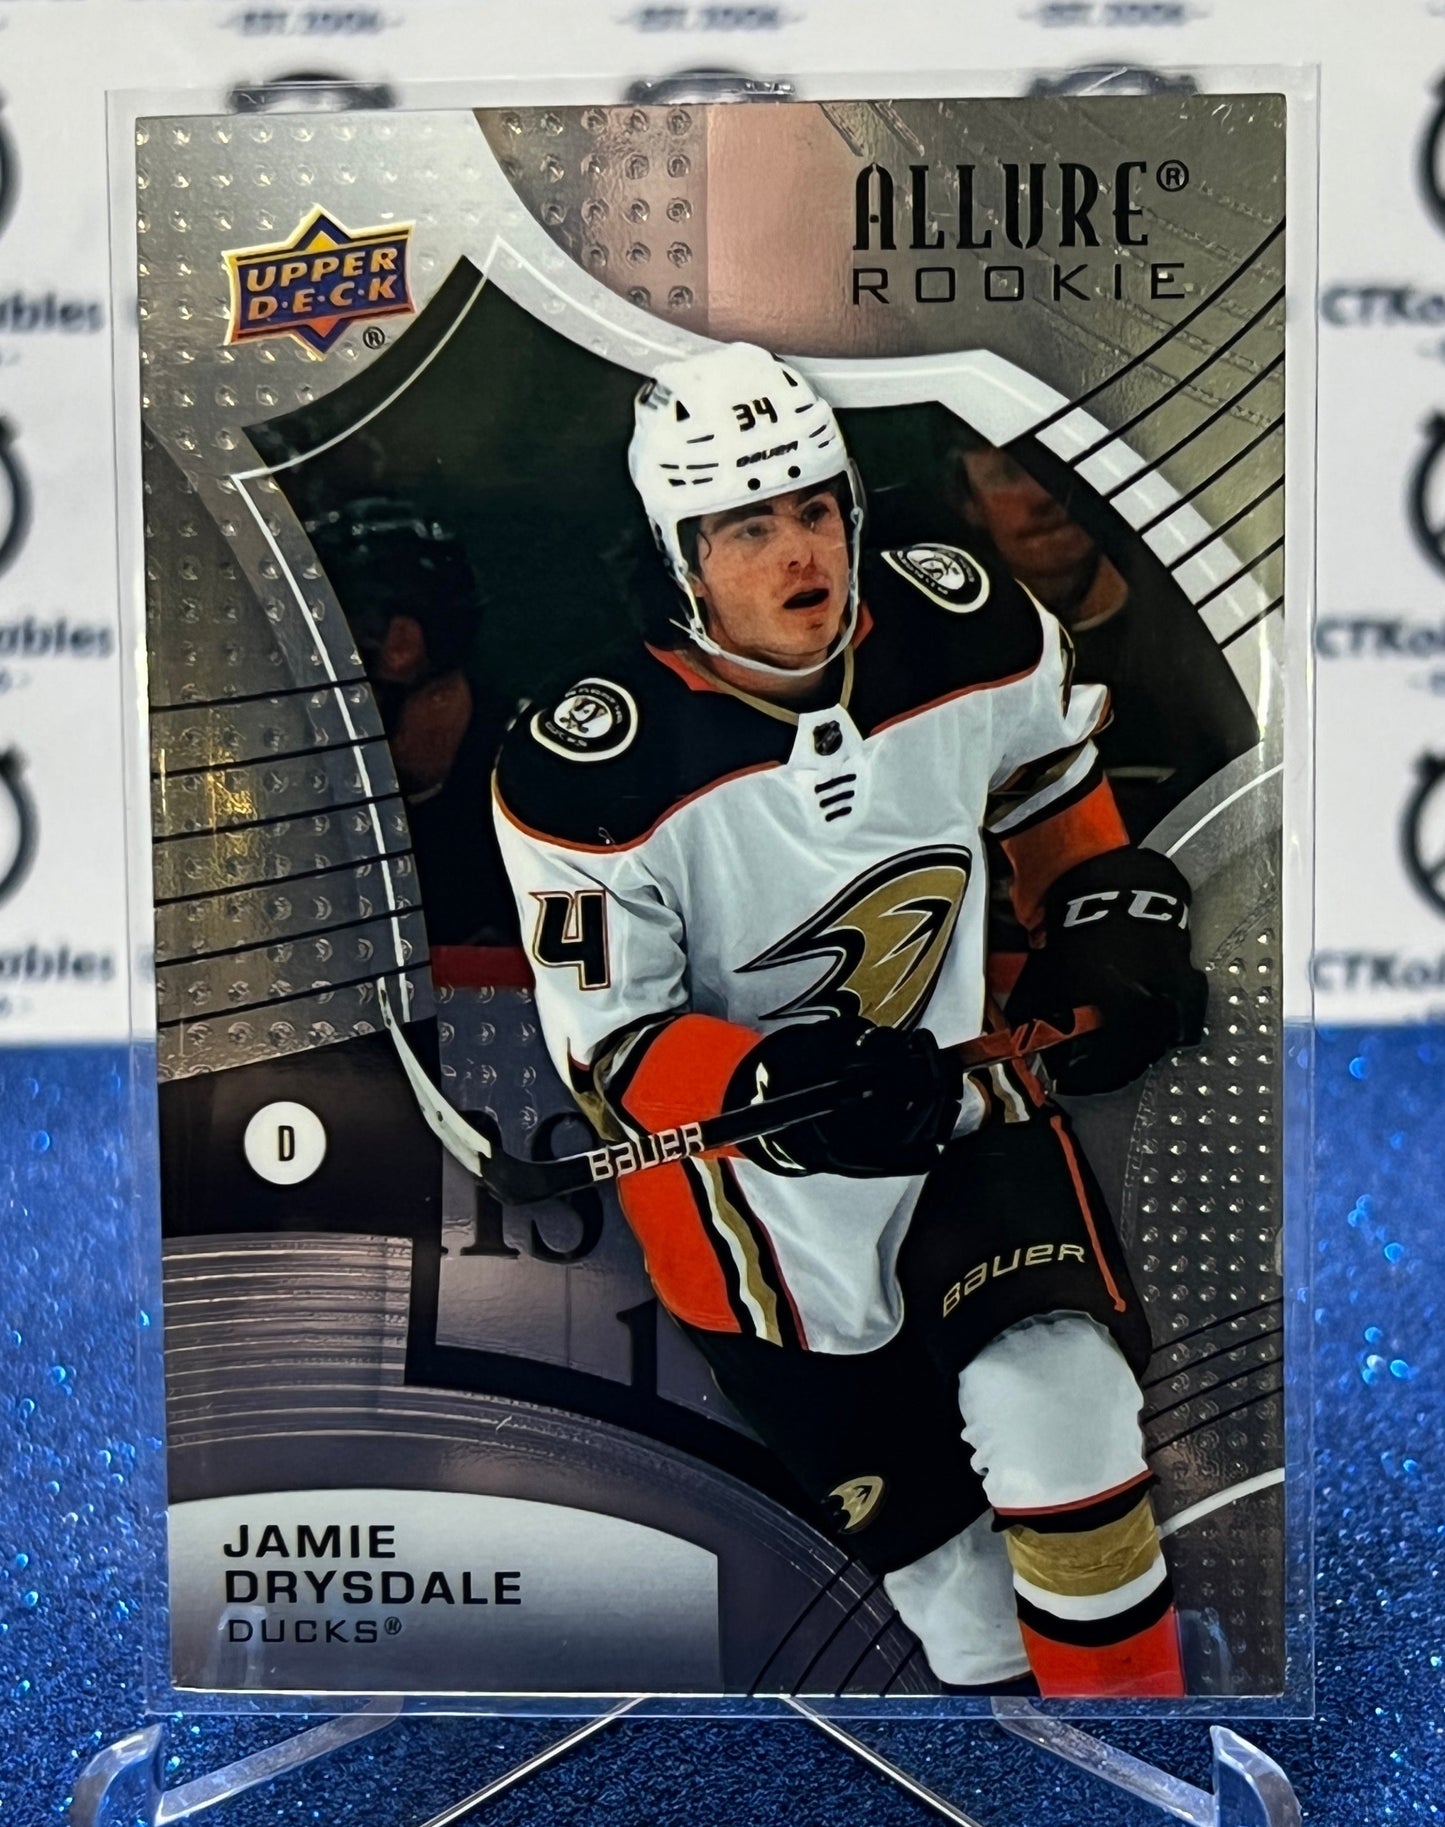 2021-22 UPPER DECK ALLURE JAMIE DRYDALE # 142 ROOKIE ANAHEIM DUCKS NHL HOCKEY CARD